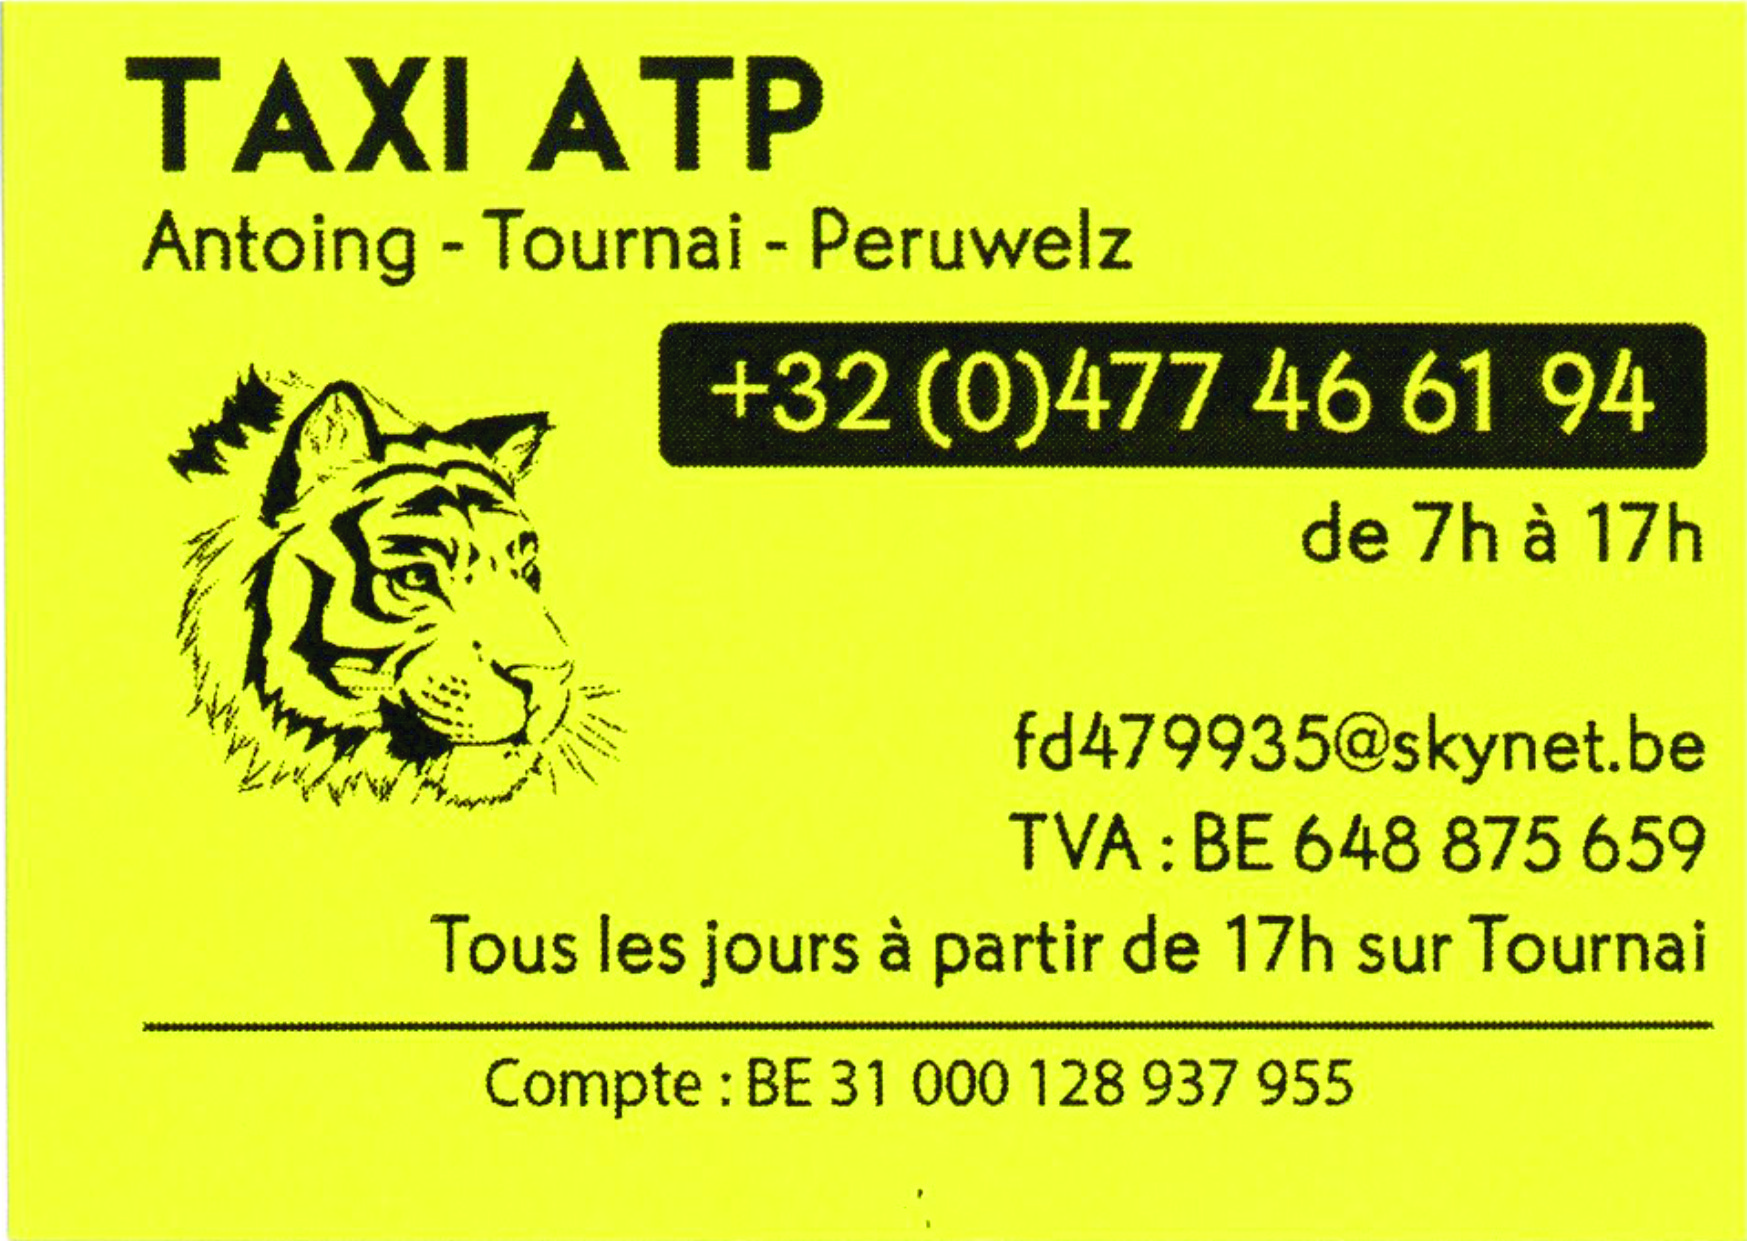 Taxi ATP